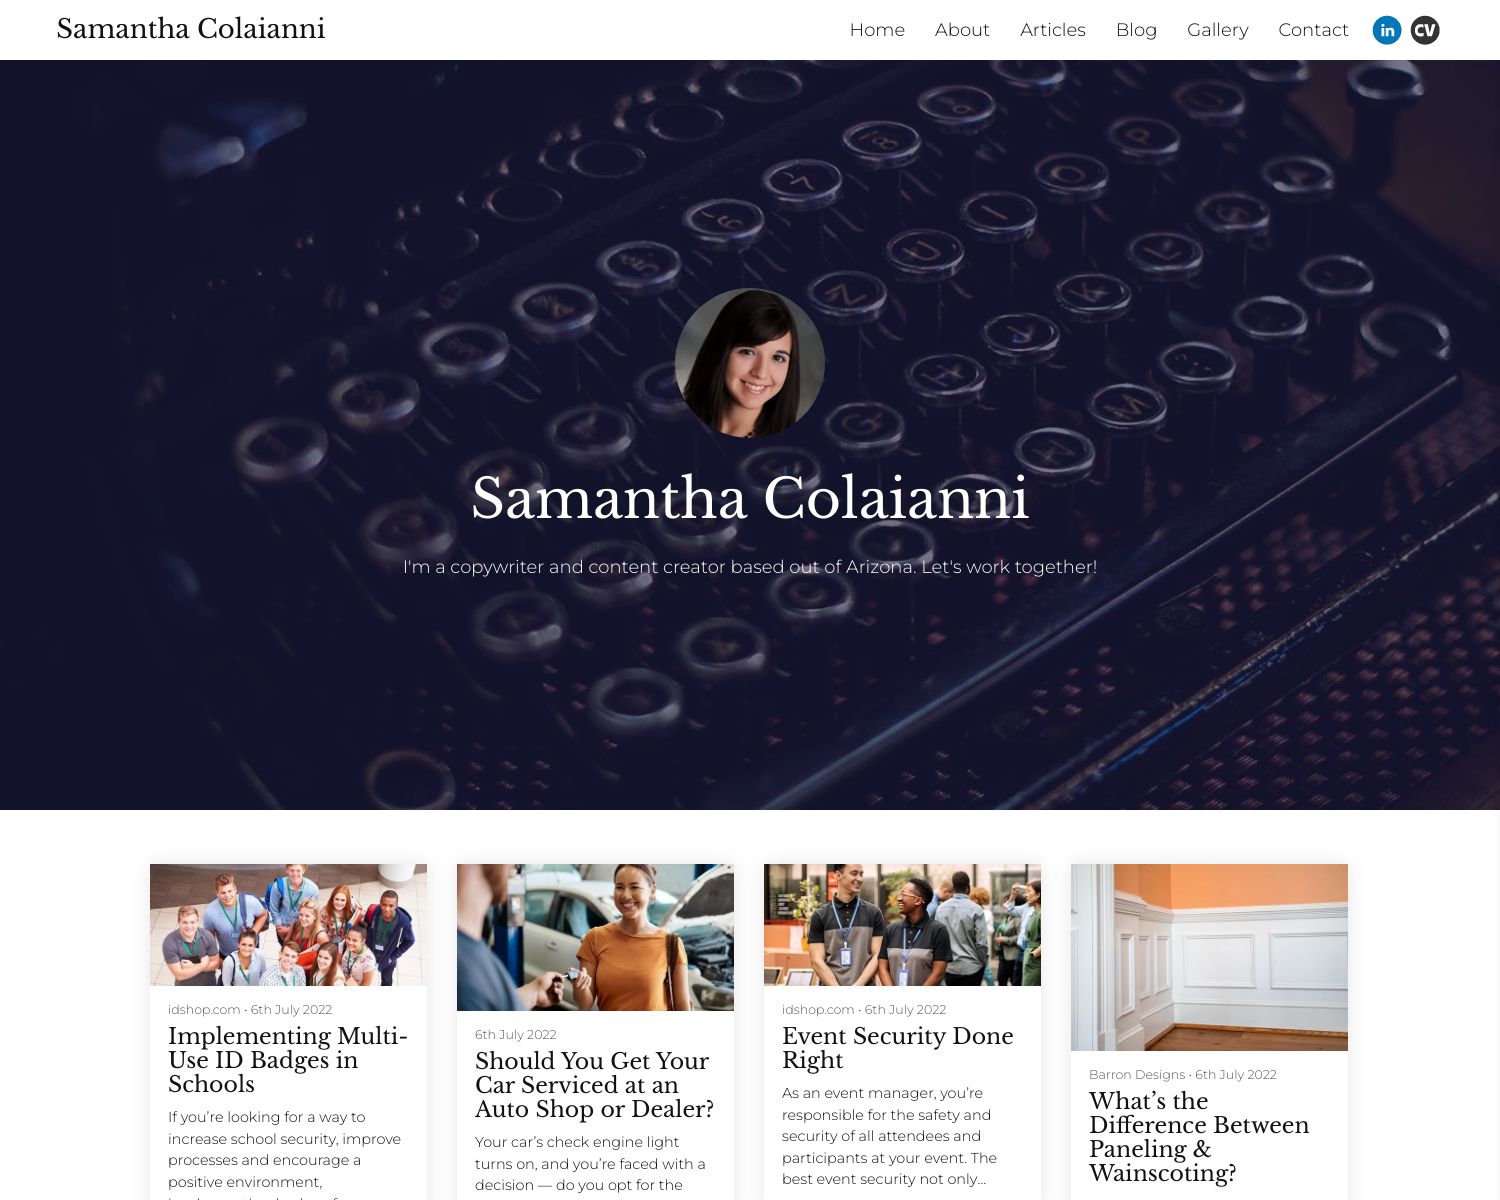 Samantha Colaianni's Portfolio